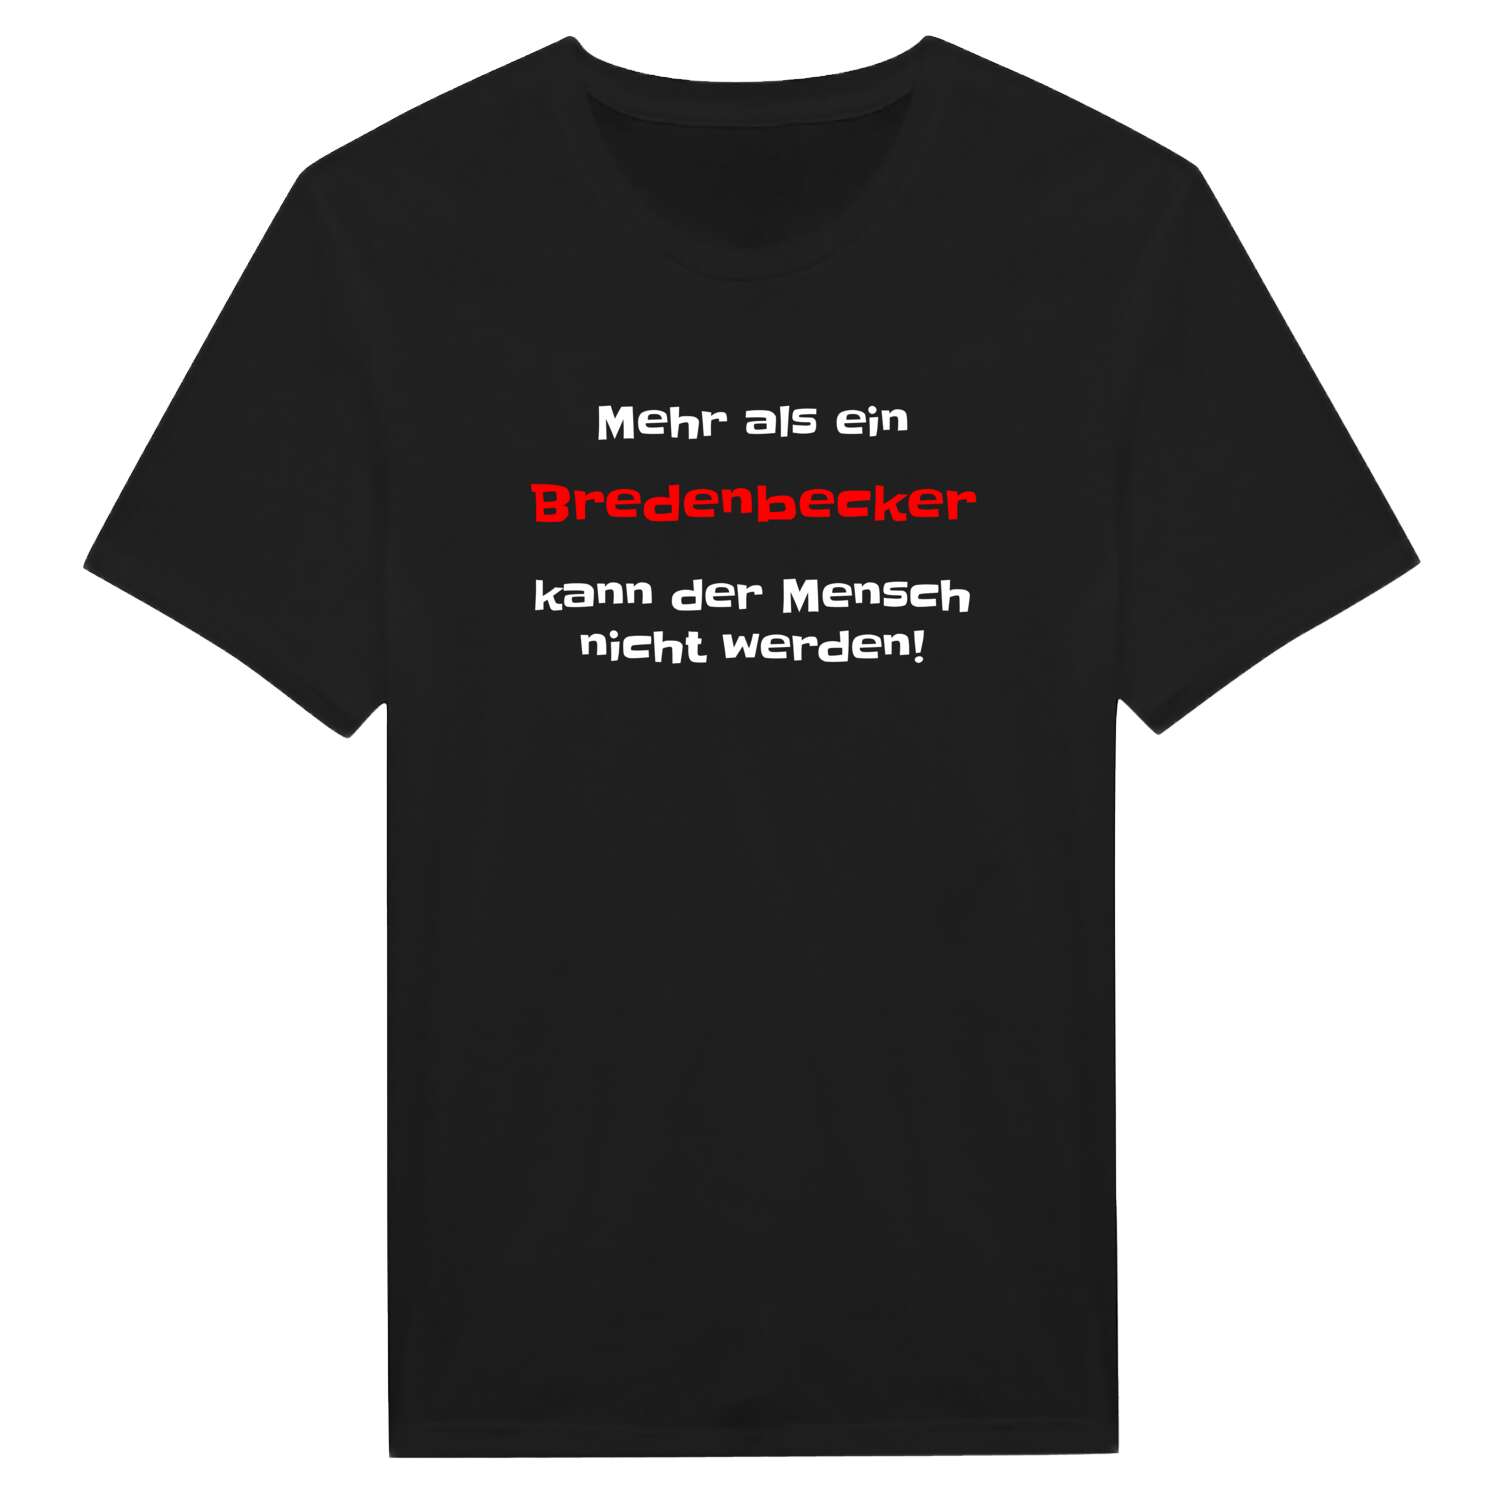 Bredenbeck T-Shirt »Mehr als ein«